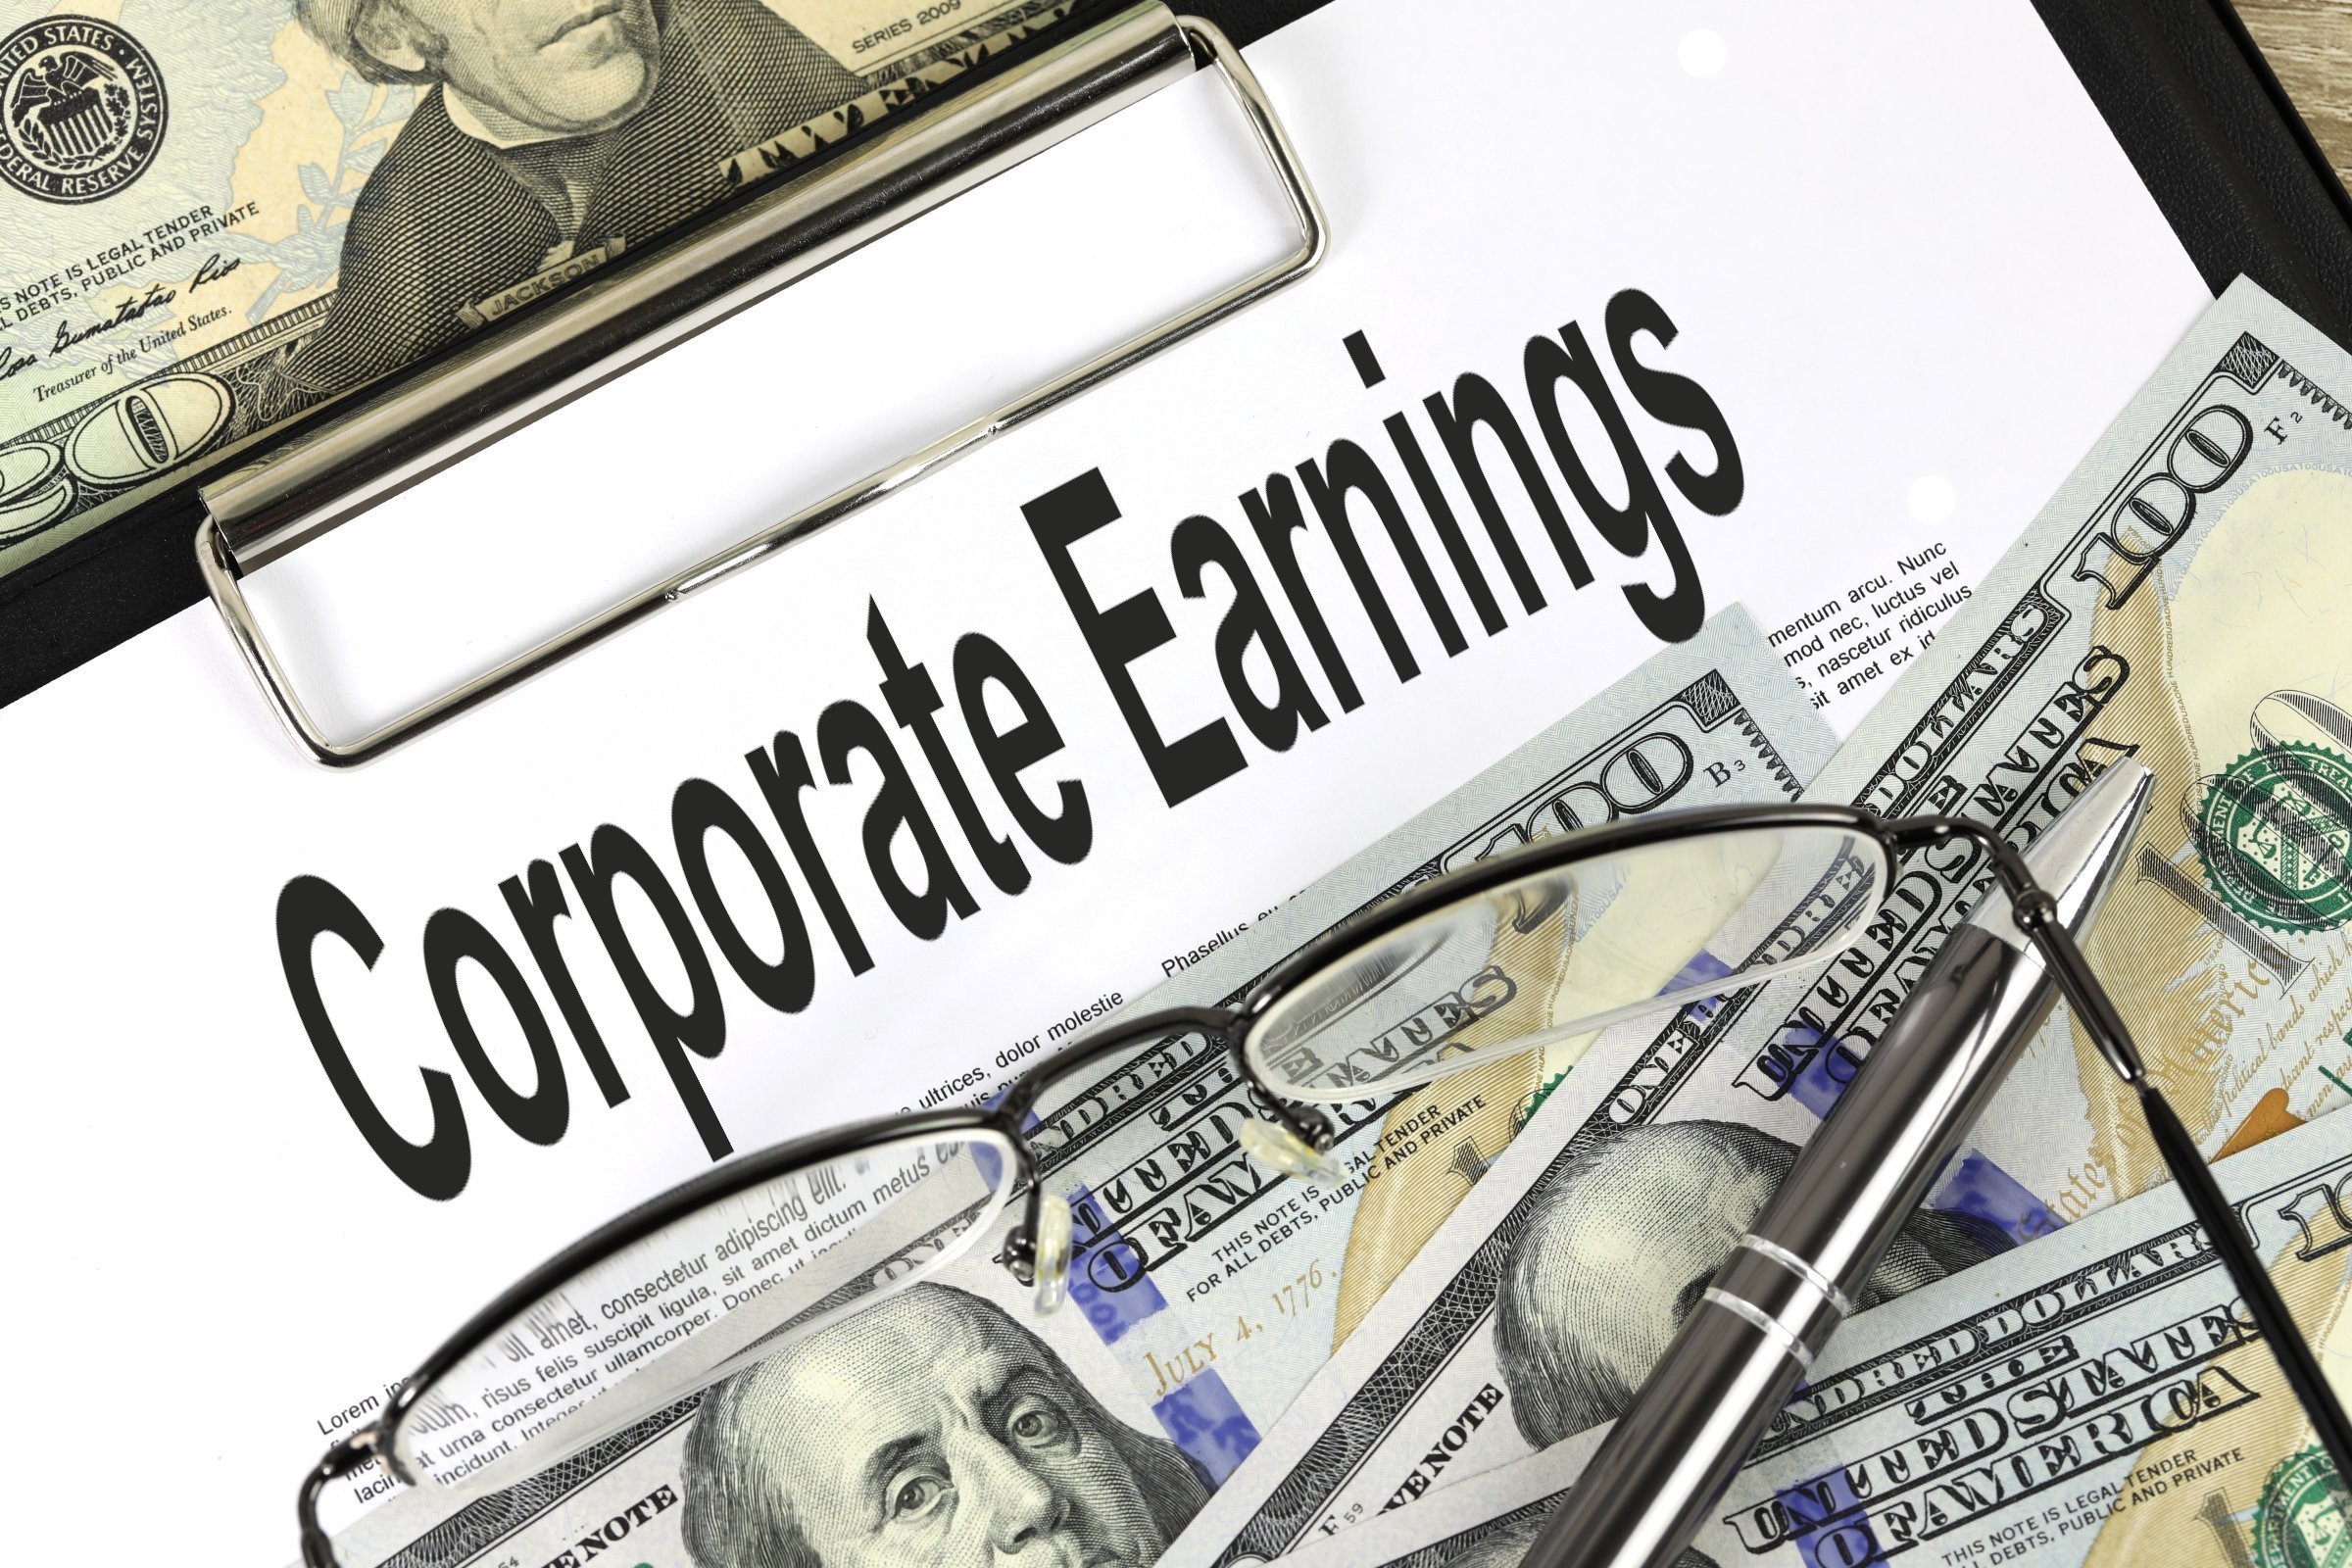 corporate earnings